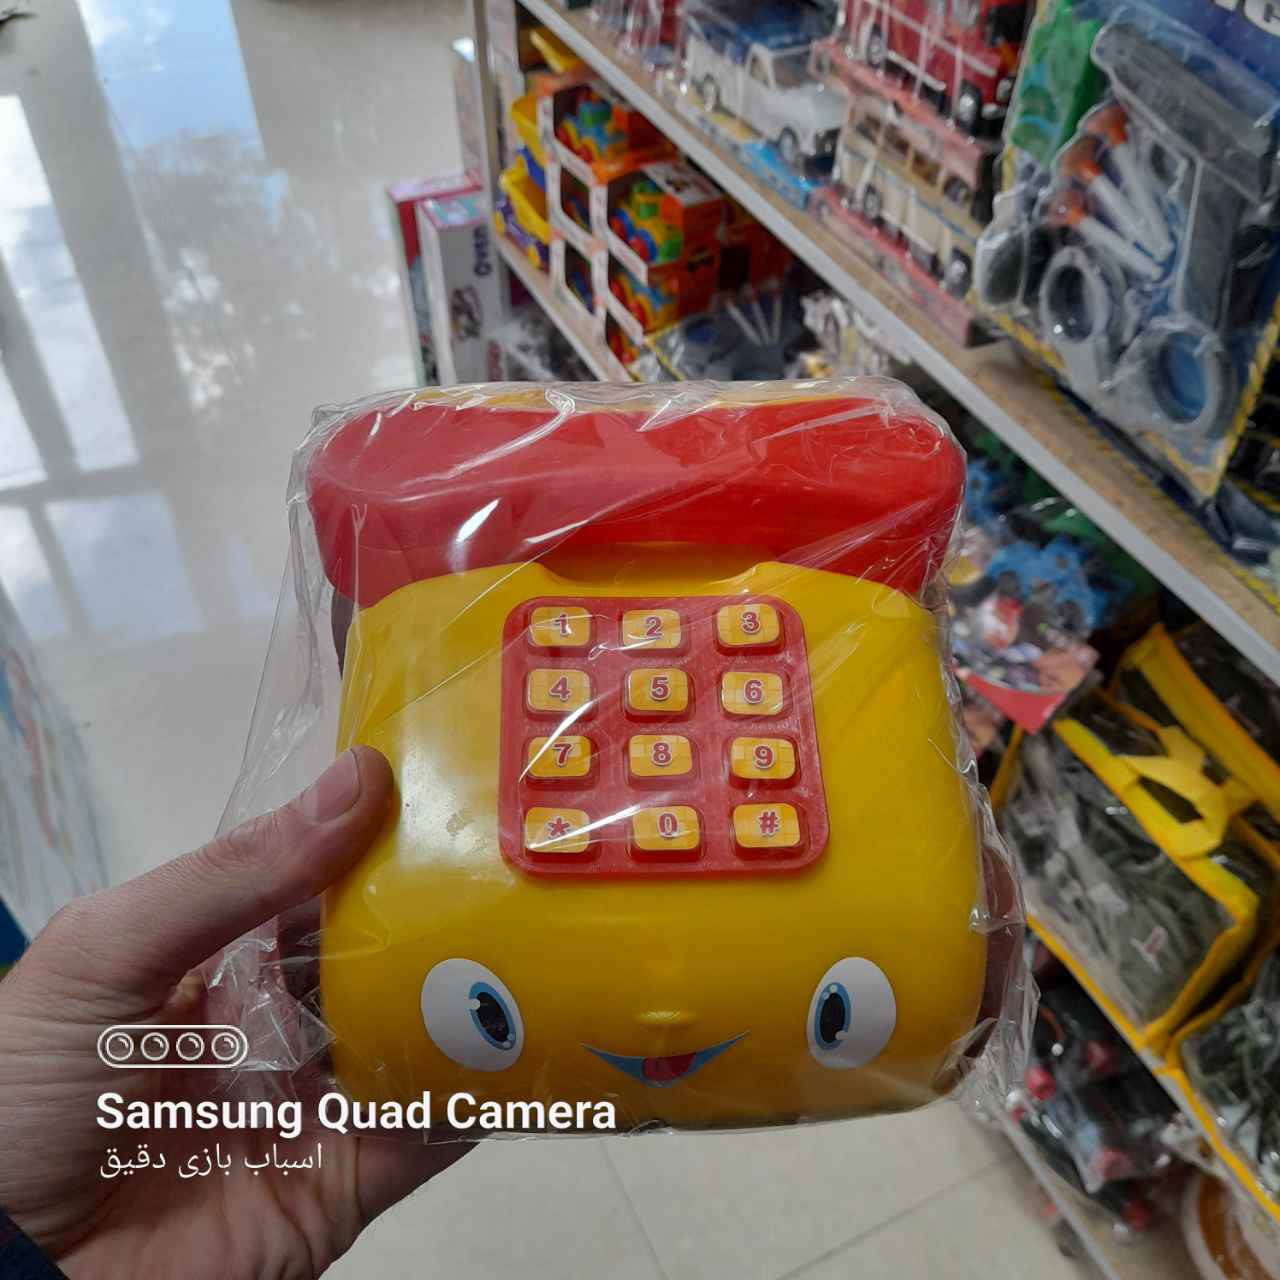  خرید اسباب بازی تلفن ماشینی به قیمت بسیار مناسب - تکی ارسال ندارد - ارسال با پست به در منزل 